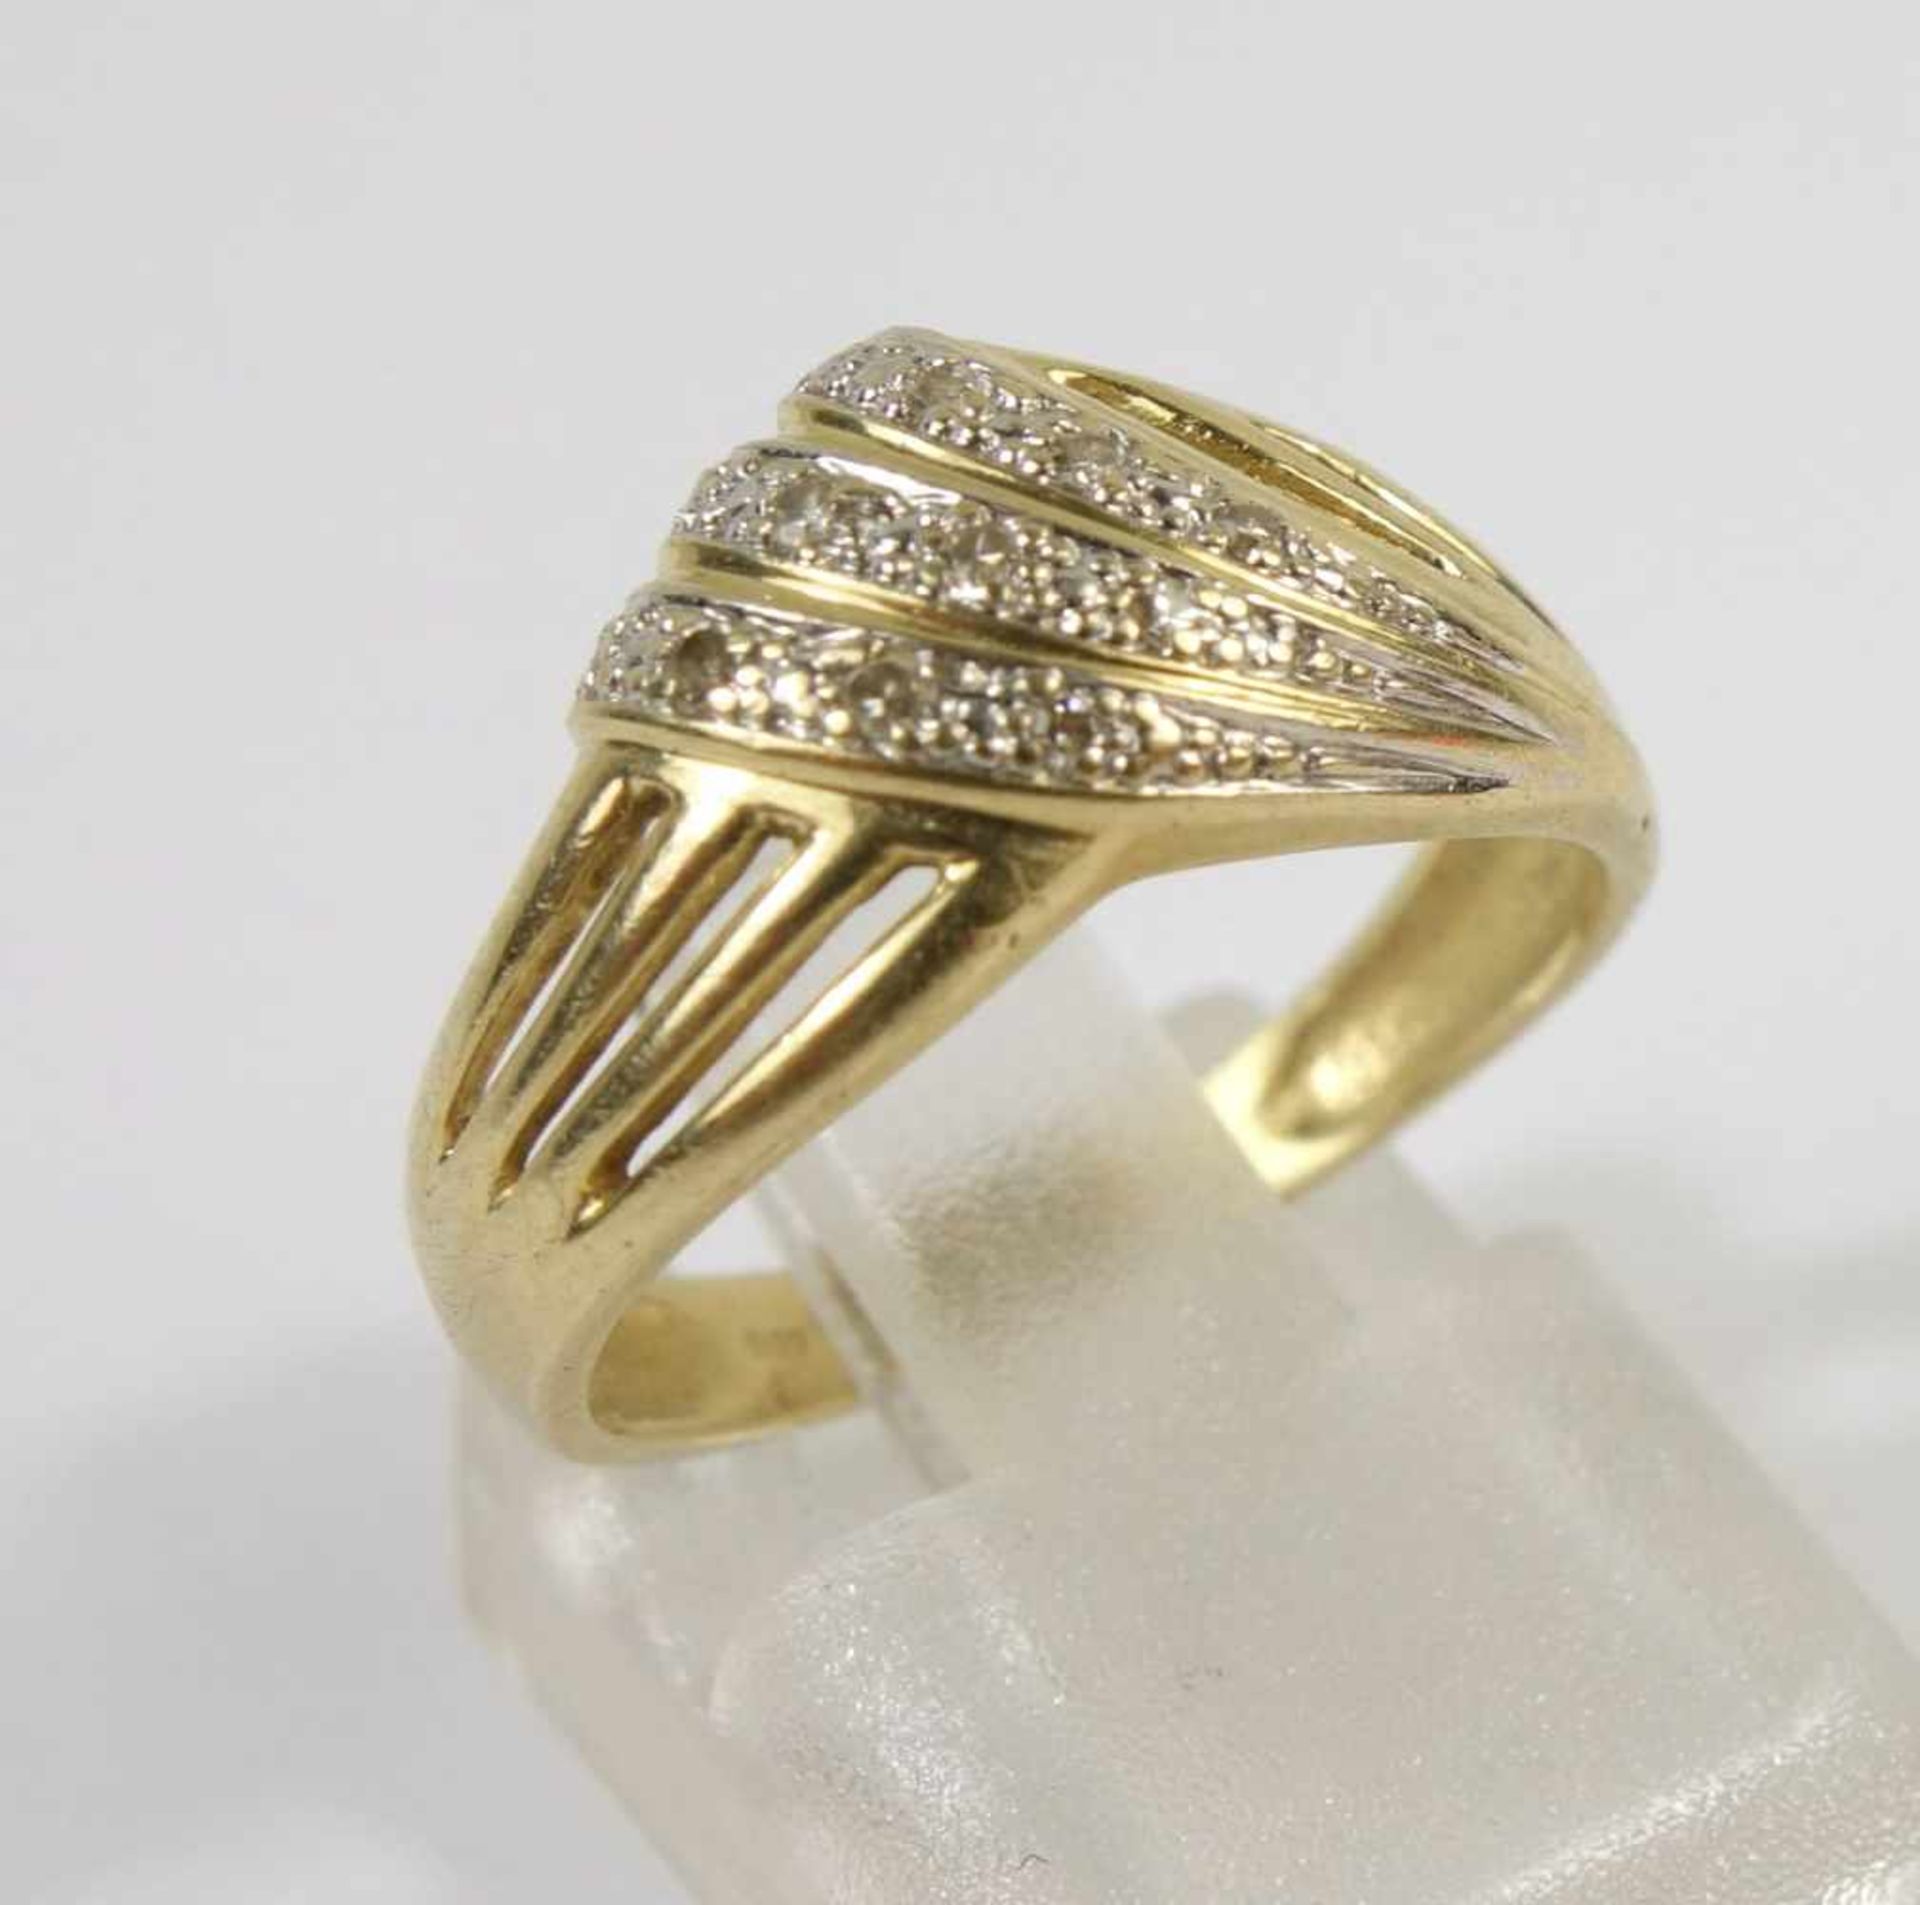 Diamantring, 585er Gold Gew.2,65g, geschwungener Ringkopf, div. kl.Diamanten, U.50